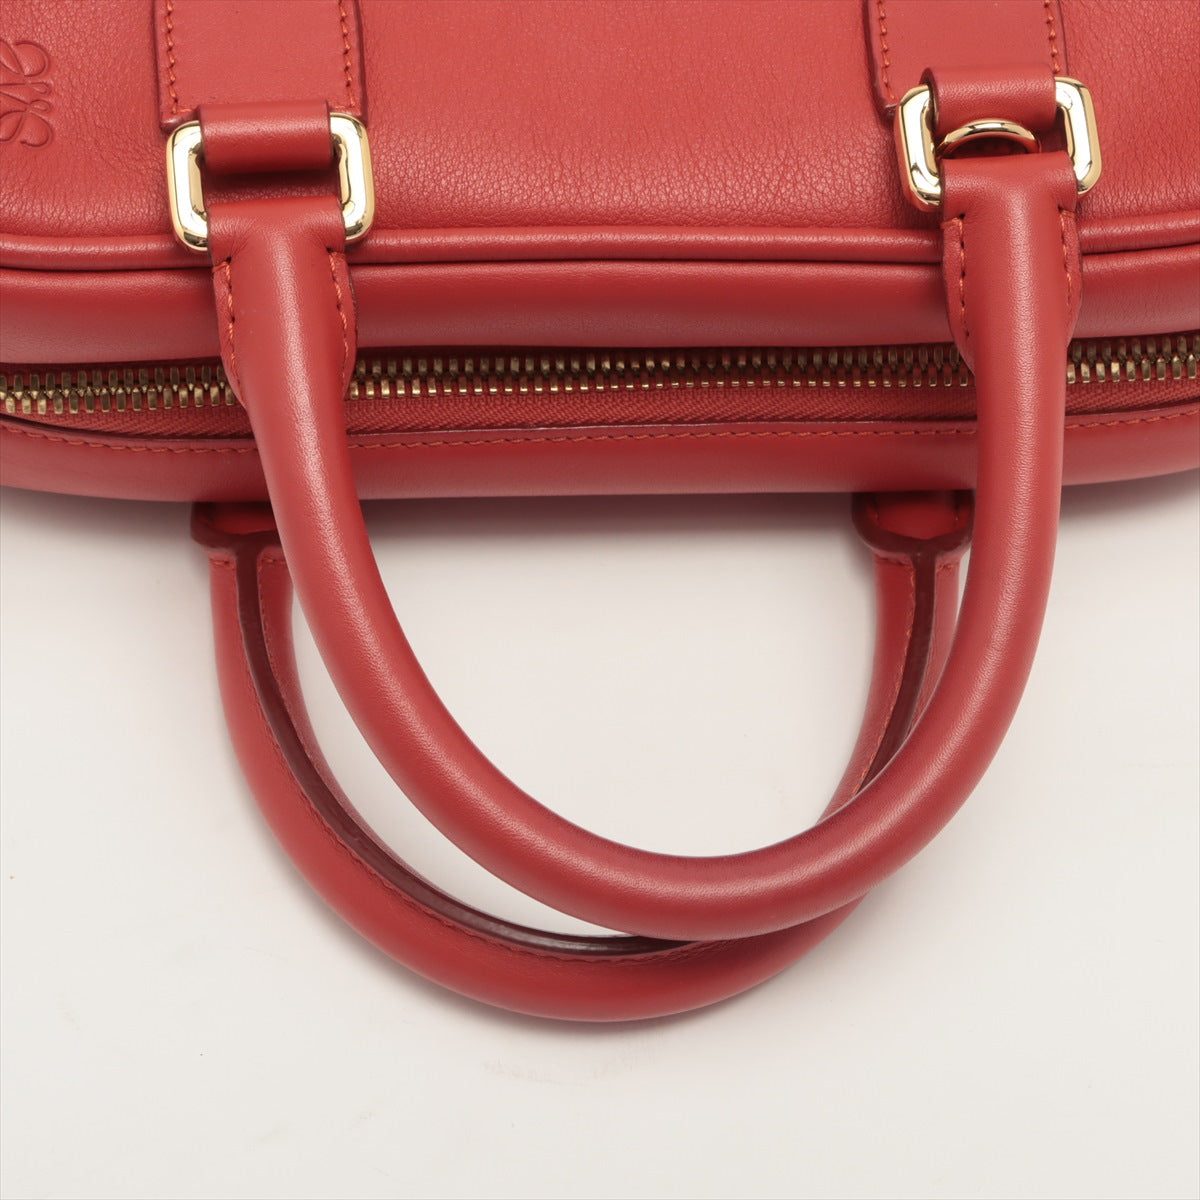 Loewe Amazona 28 Leather 2way handbag Red